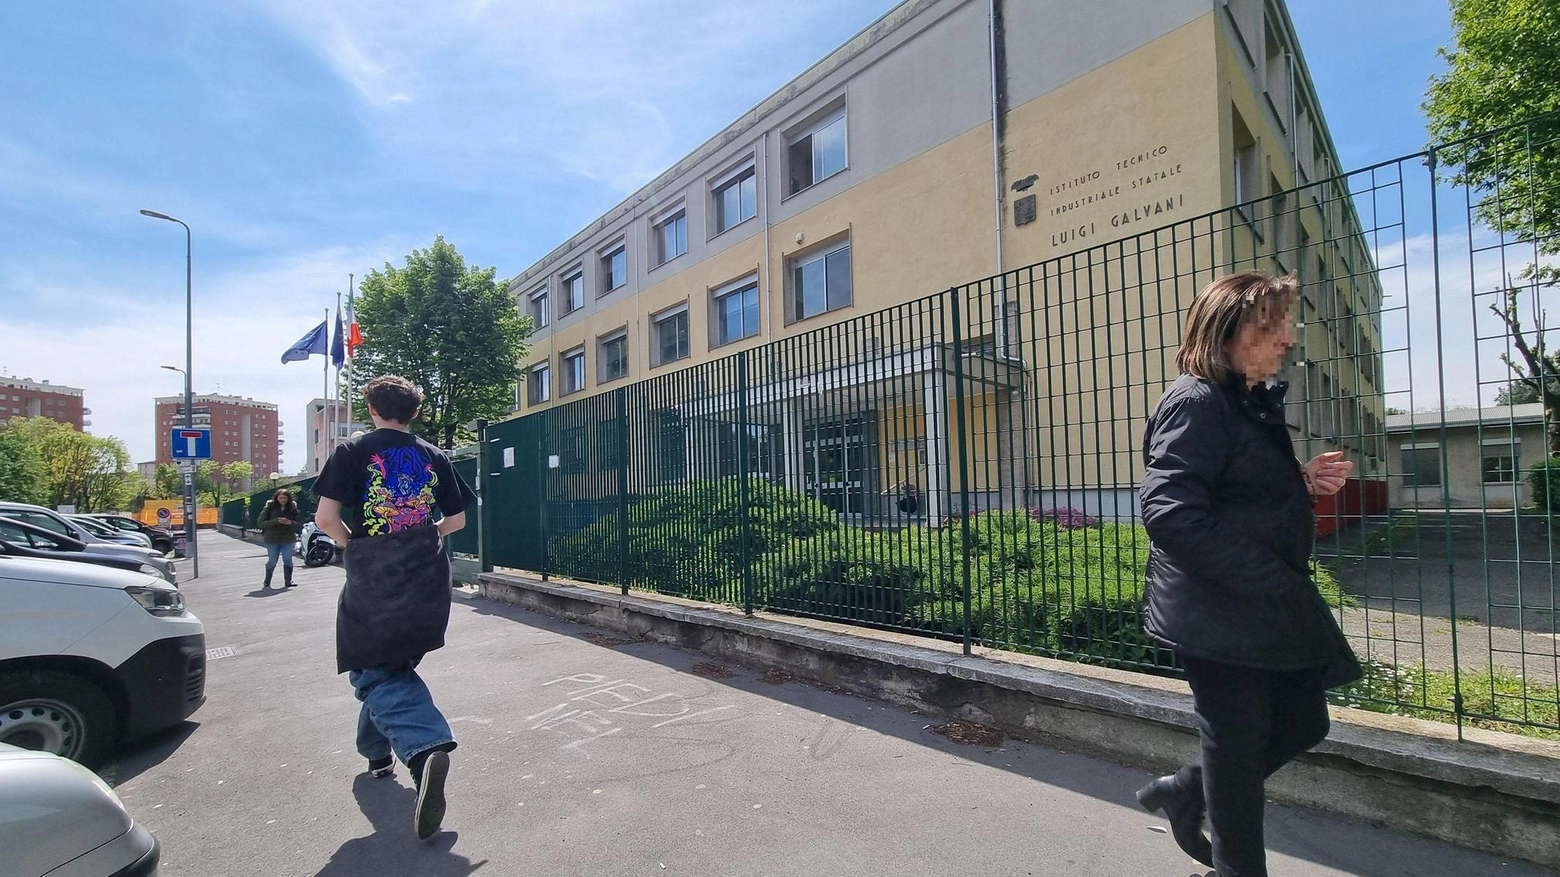 A Milano, uno studente di 15 anni è stato arrestato per aver portato un coltello a scuola e aver avuto una colluttazione con due insegnanti. Uno dei docenti è stato ferito e trasportato in ospedale.